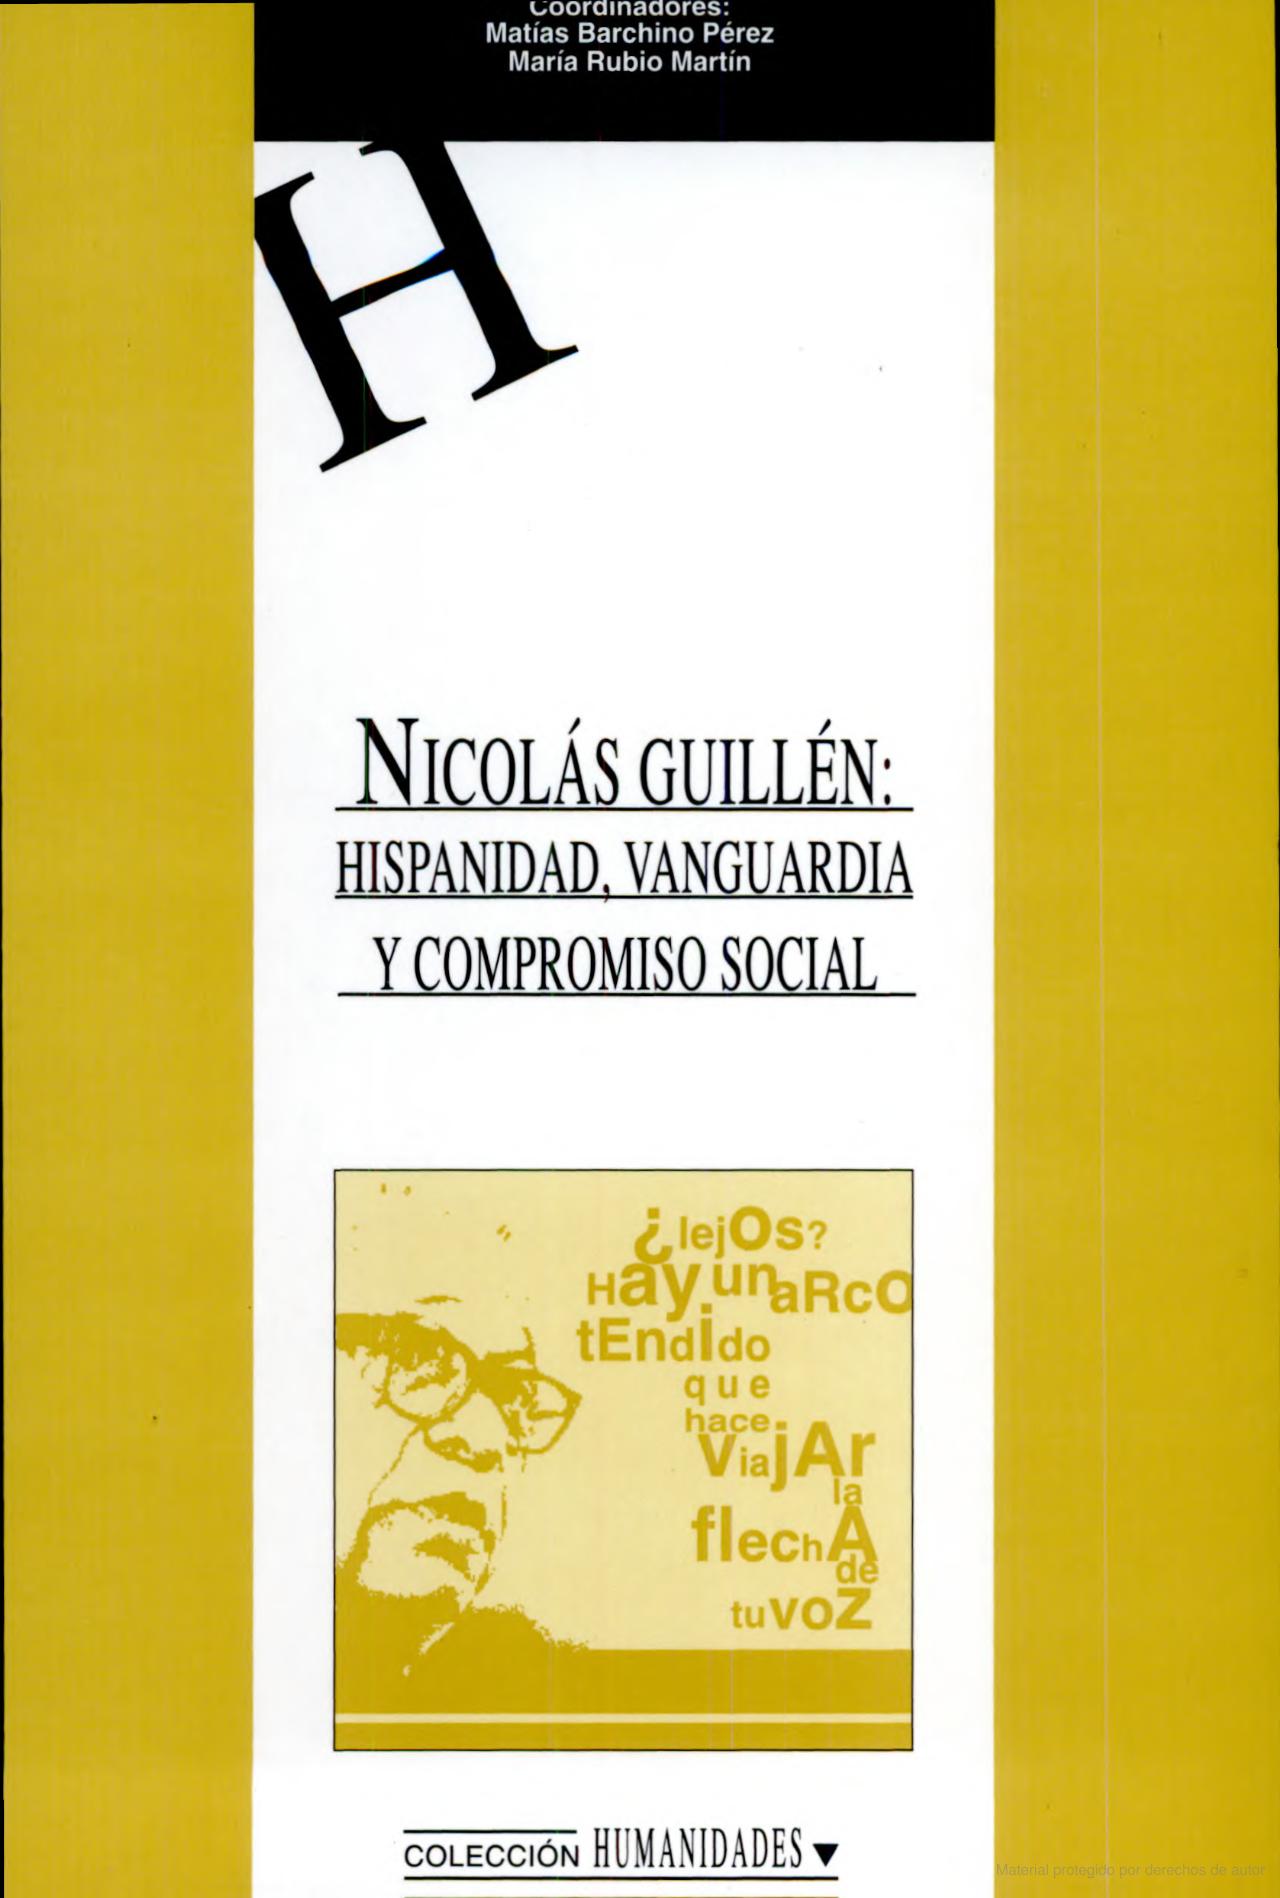 Imagen de portada del libro Nicolás Guillén